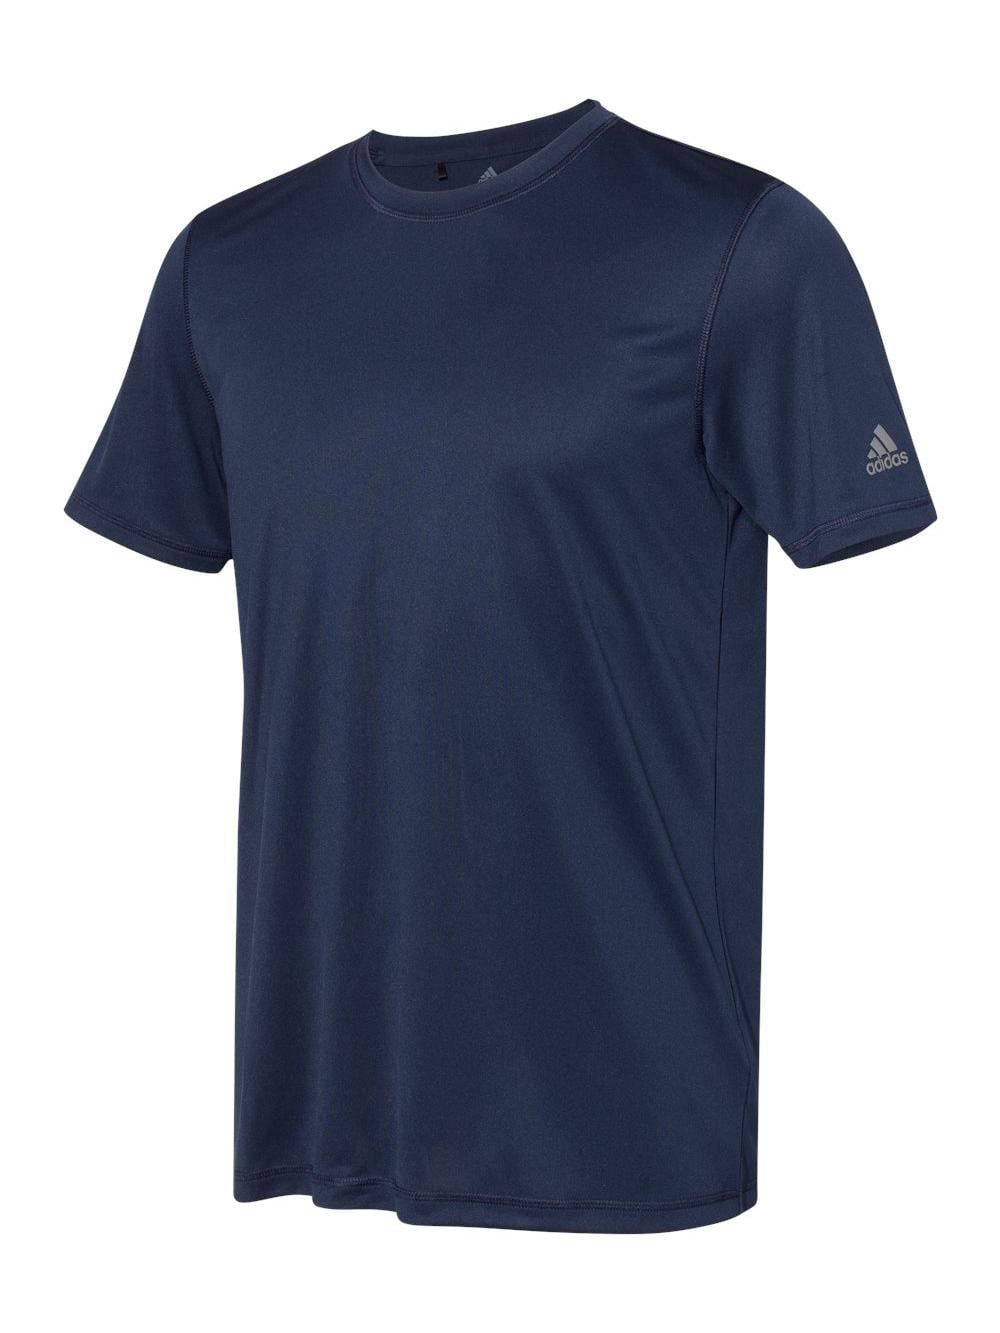 Adidas - Sport T-Shirt - A376 - Collegiate Navy - Size: 3XL - Walmart.com